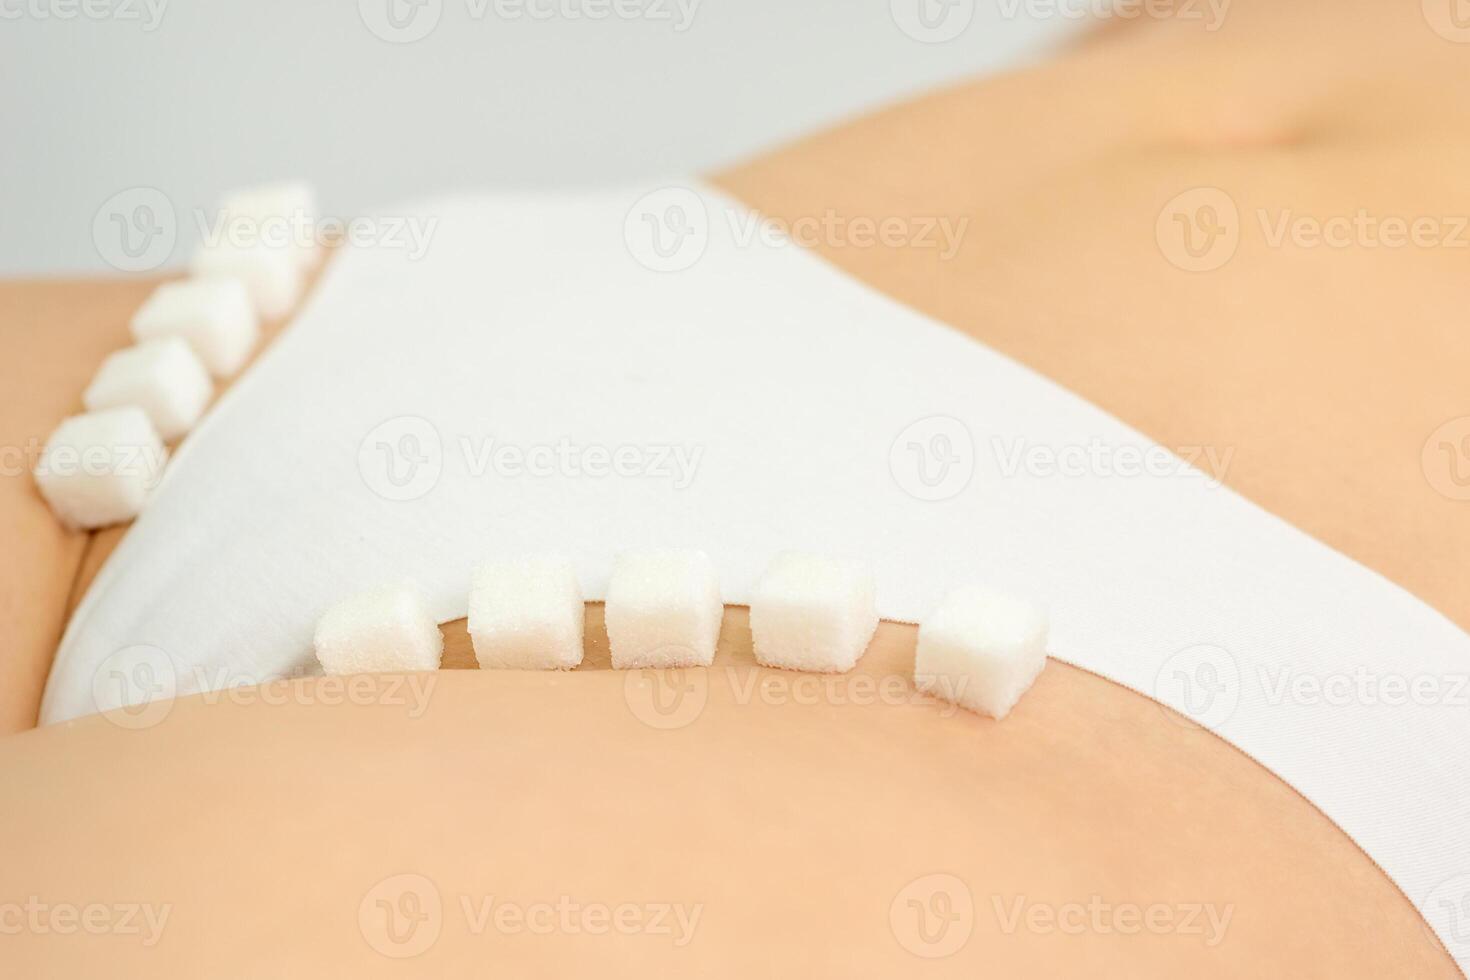 Zucker Würfel Lügen im ein Reihe auf weiblich Bikini Zone, das Konzept von intim Enthaarung, Probleme von intim Hygiene. foto